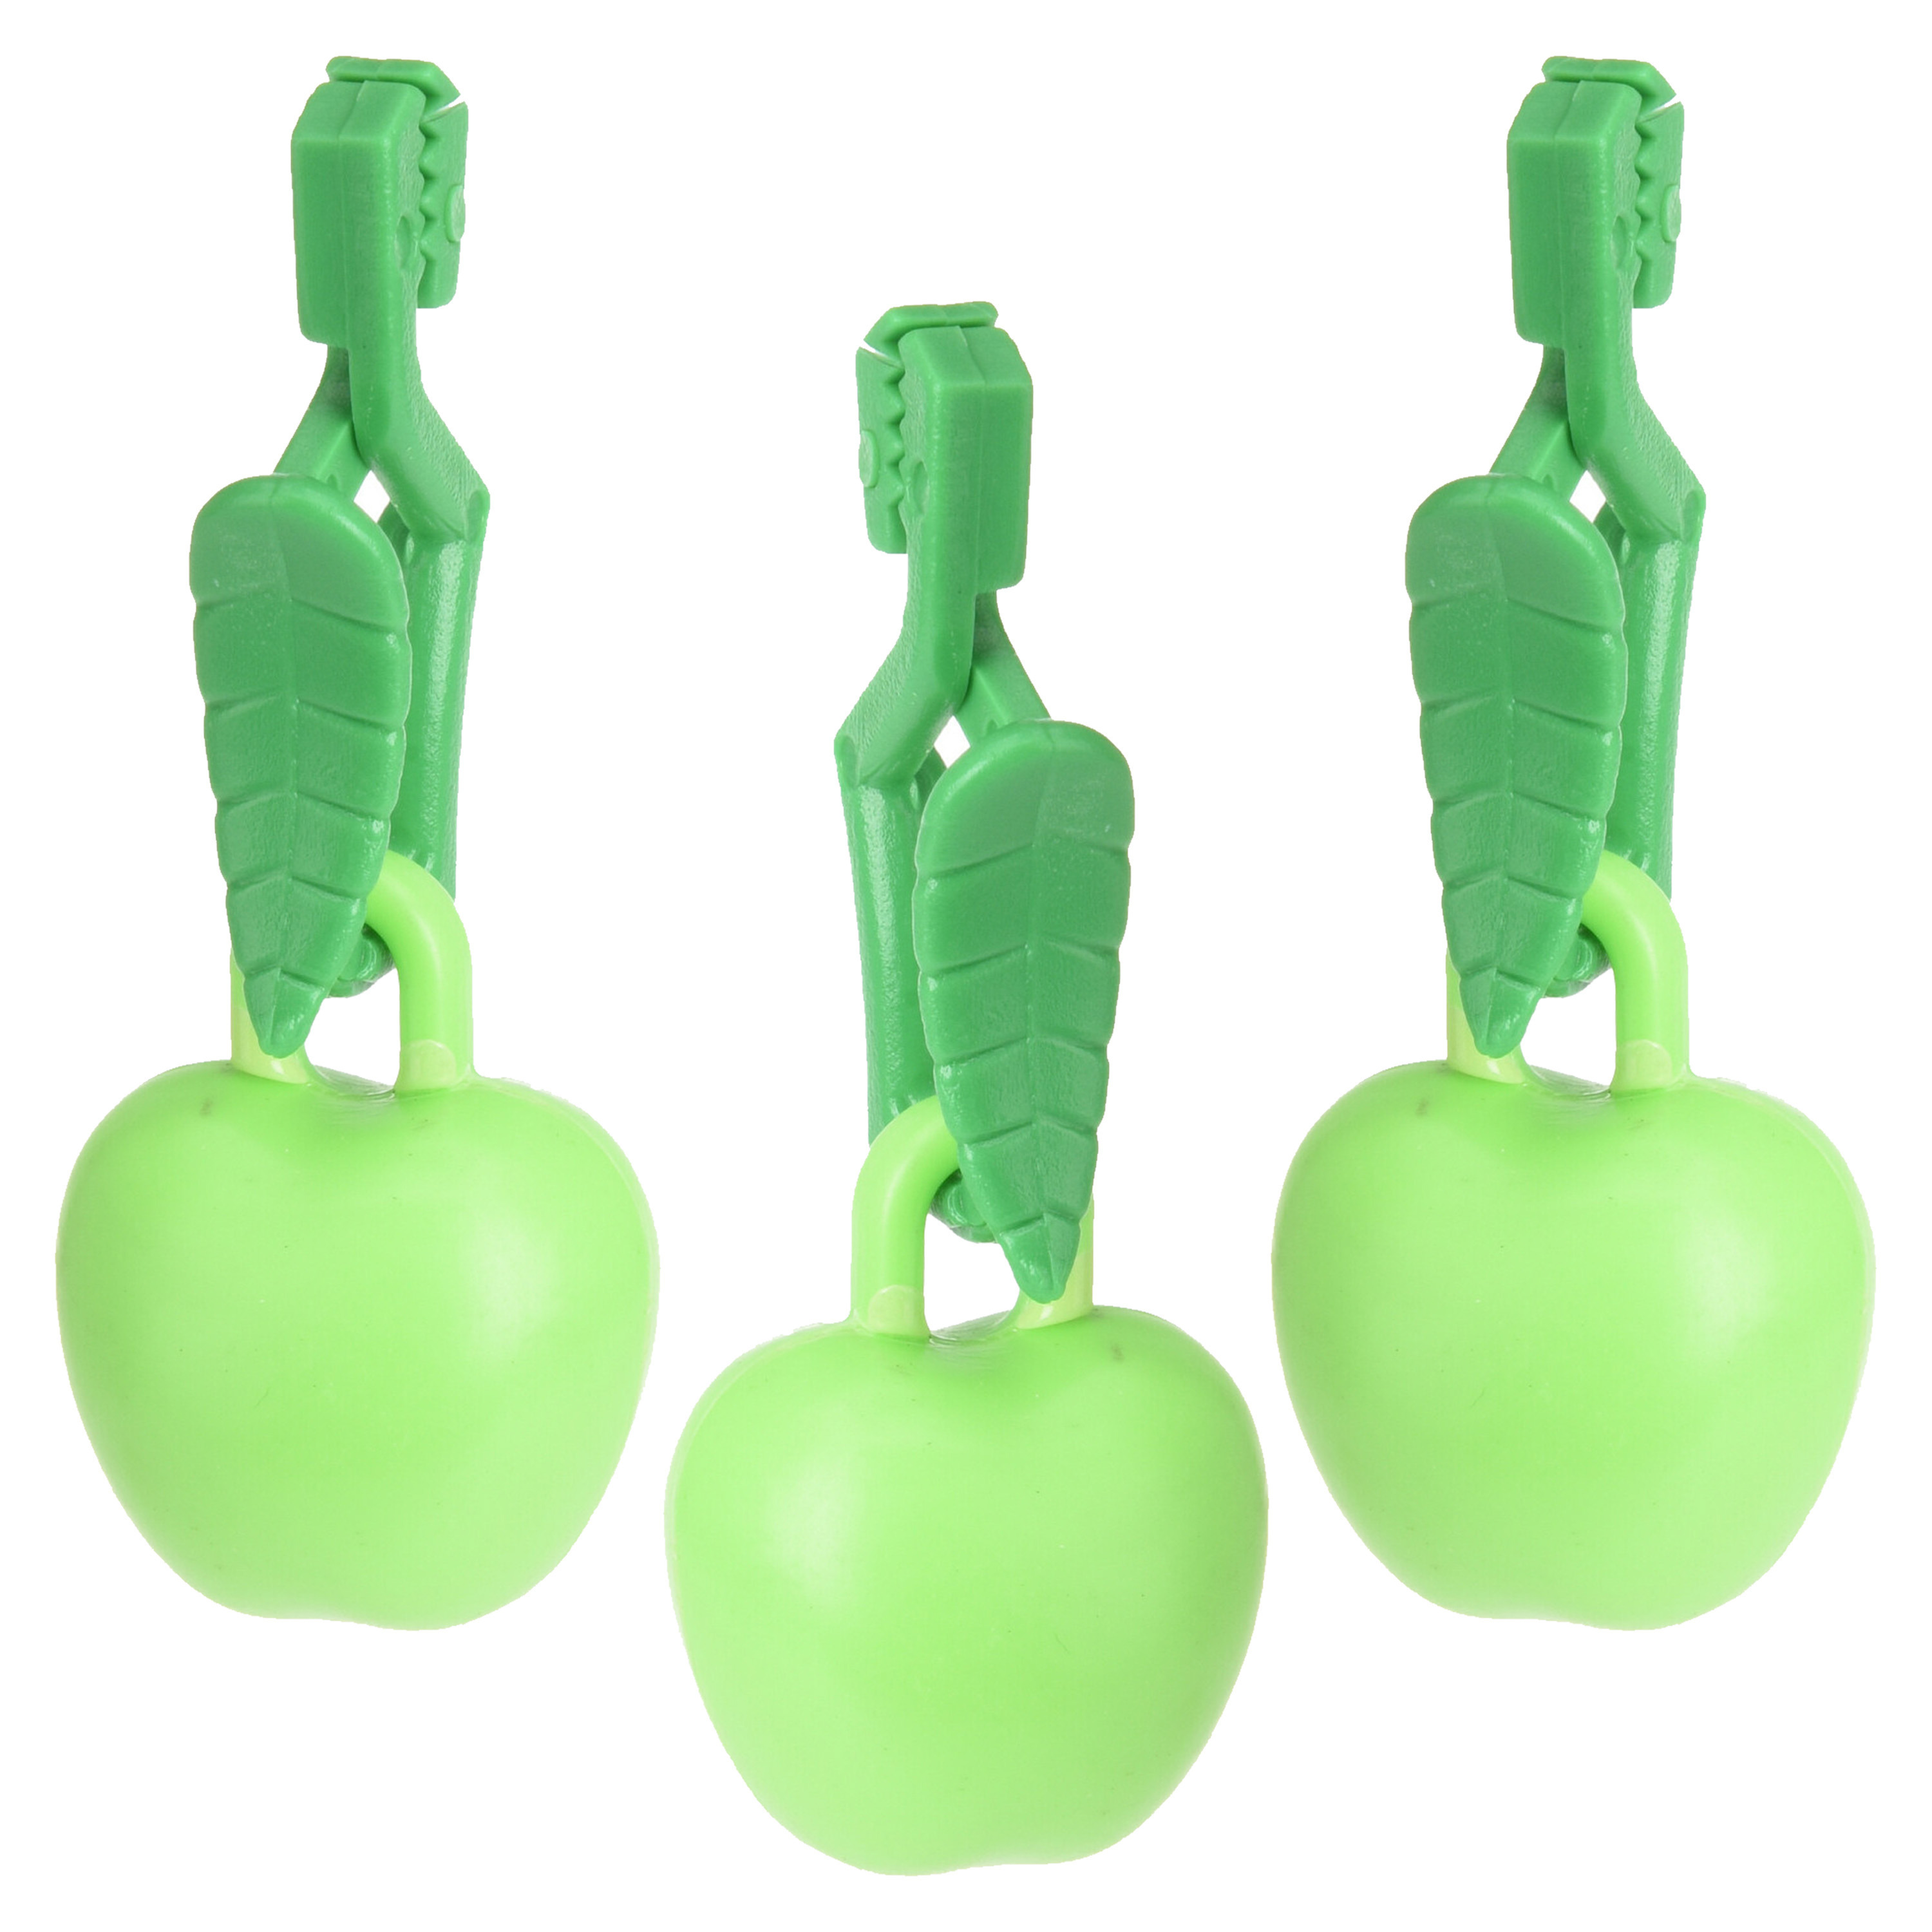 Tafelkleedgewichten appels 12x groen kunststof voor tafelkleden en tafelzeilen